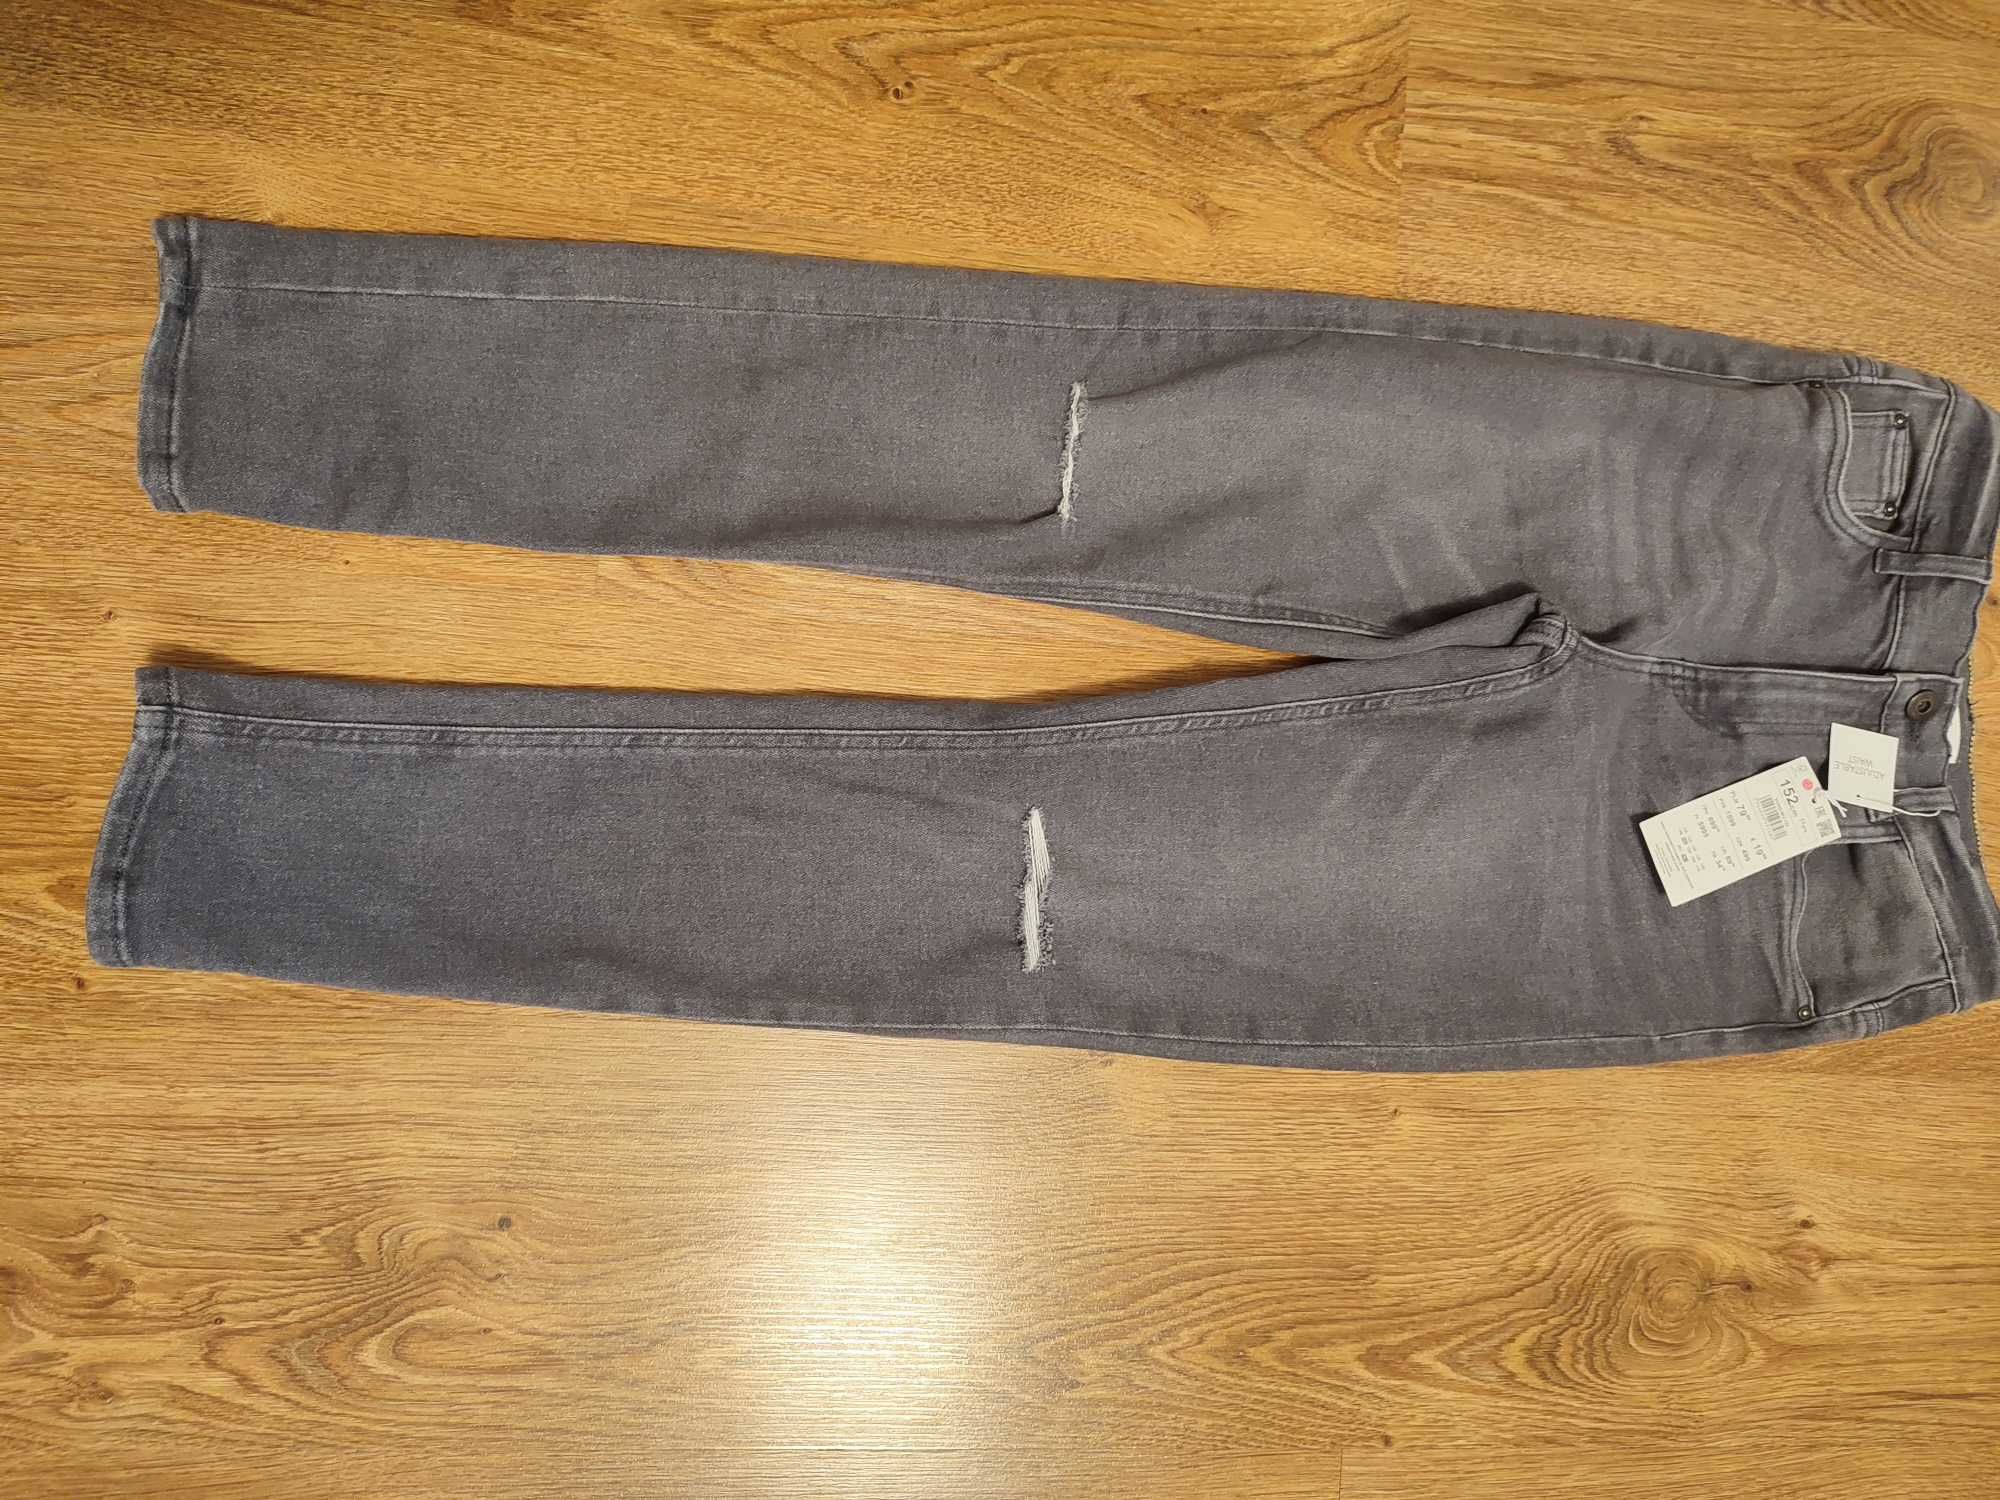 Сірі джинси з розрізами Reserved 152 розмір, нові